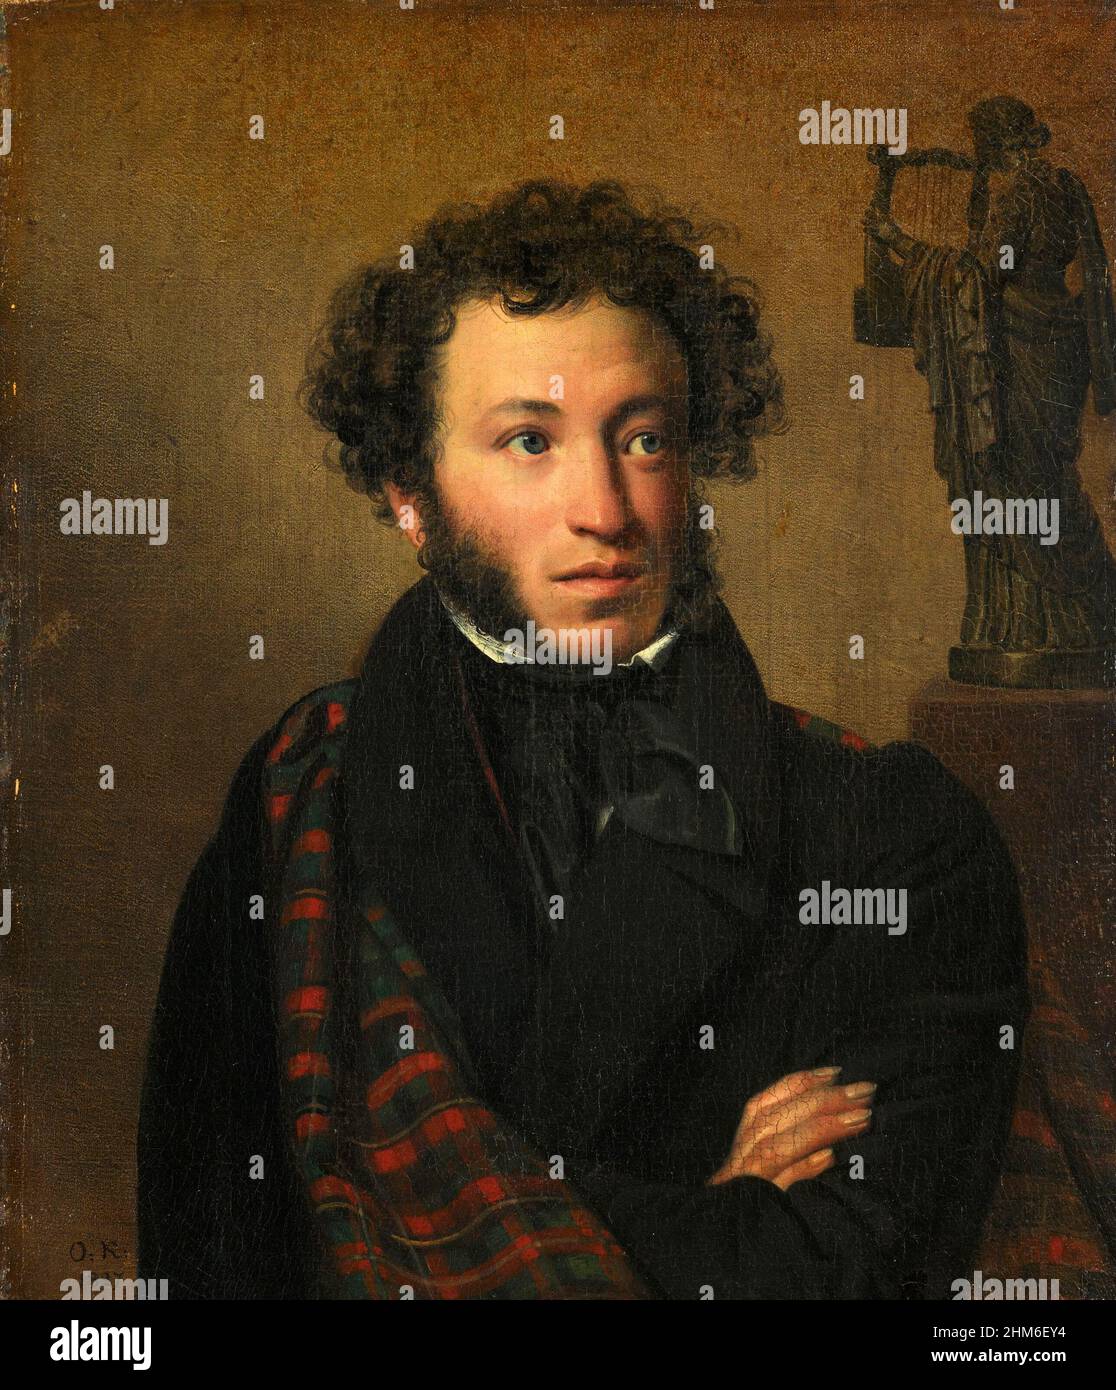 Un portrait de l'écrivain russe Alexander Pushkin, auteur d'Eugene Onegin, de 1837 quand il avait 28 ans. Banque D'Images